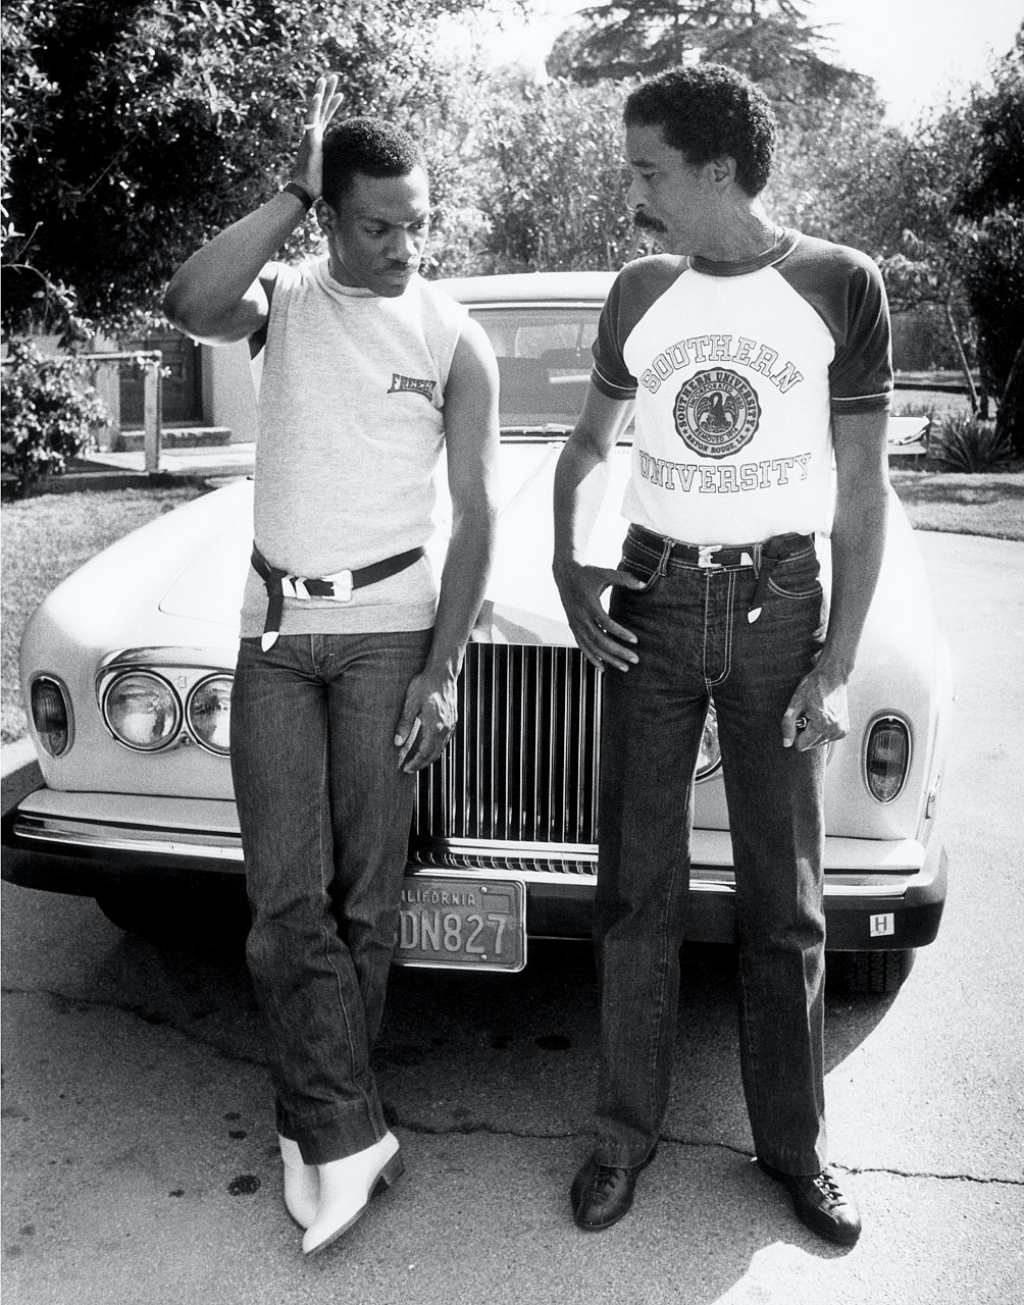 Personajes singulares y sus coches: Eddie Murphy y Richard Prior posando para la revista People en la casa de Prior en Encino en 1987 | Sennet Photography